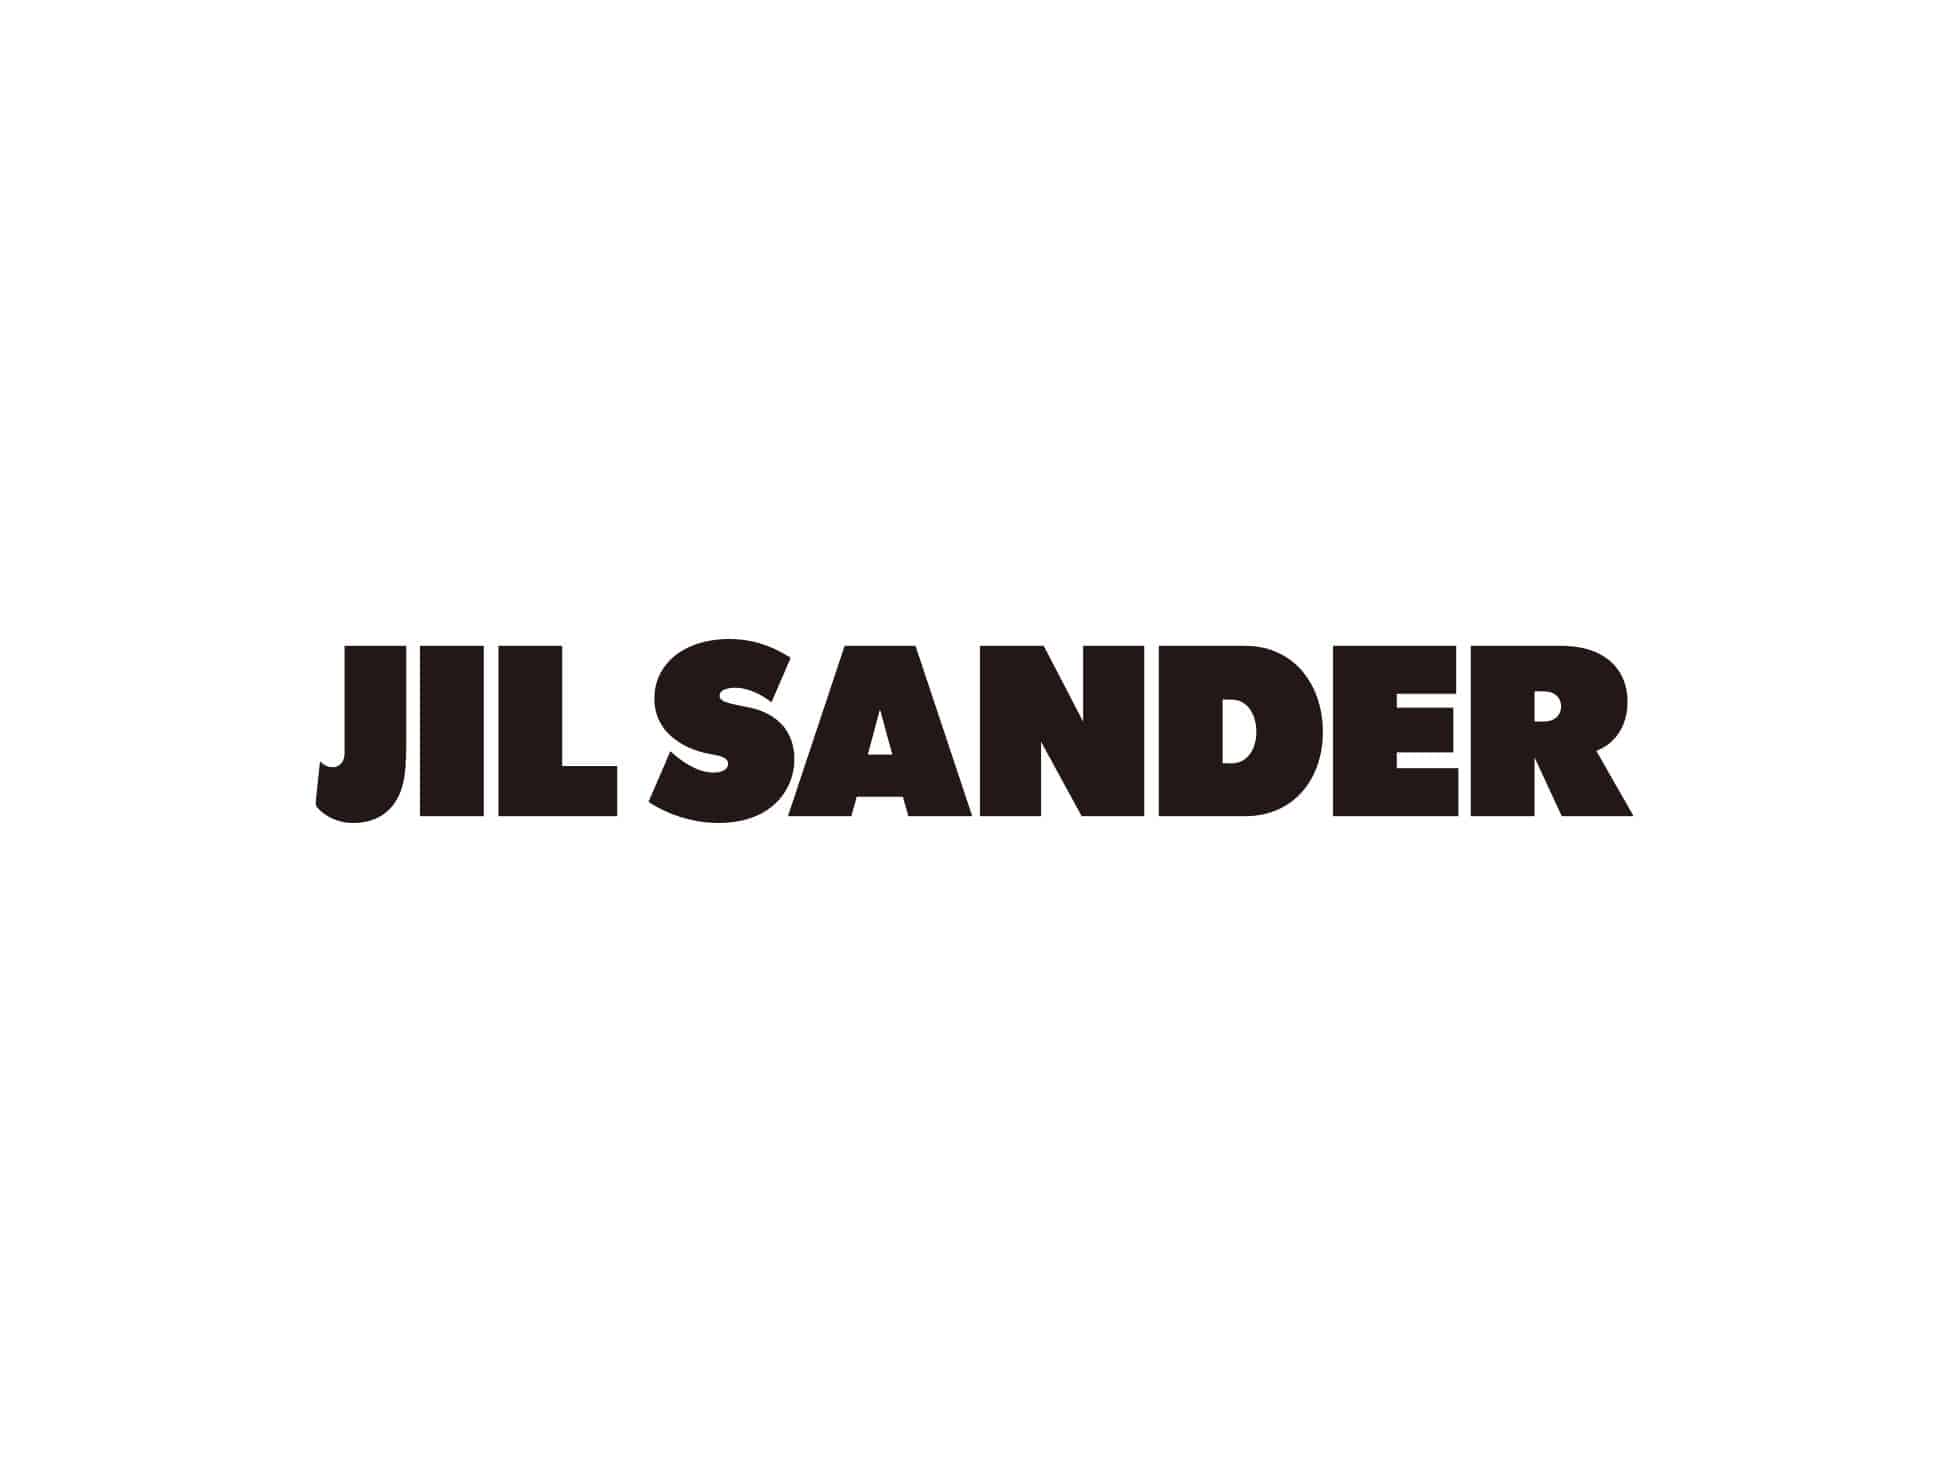 JIL SANDER Pop Up Event 3.18(Sat) - 3.26(Sun) ＠Ron Herman Zushi Marina